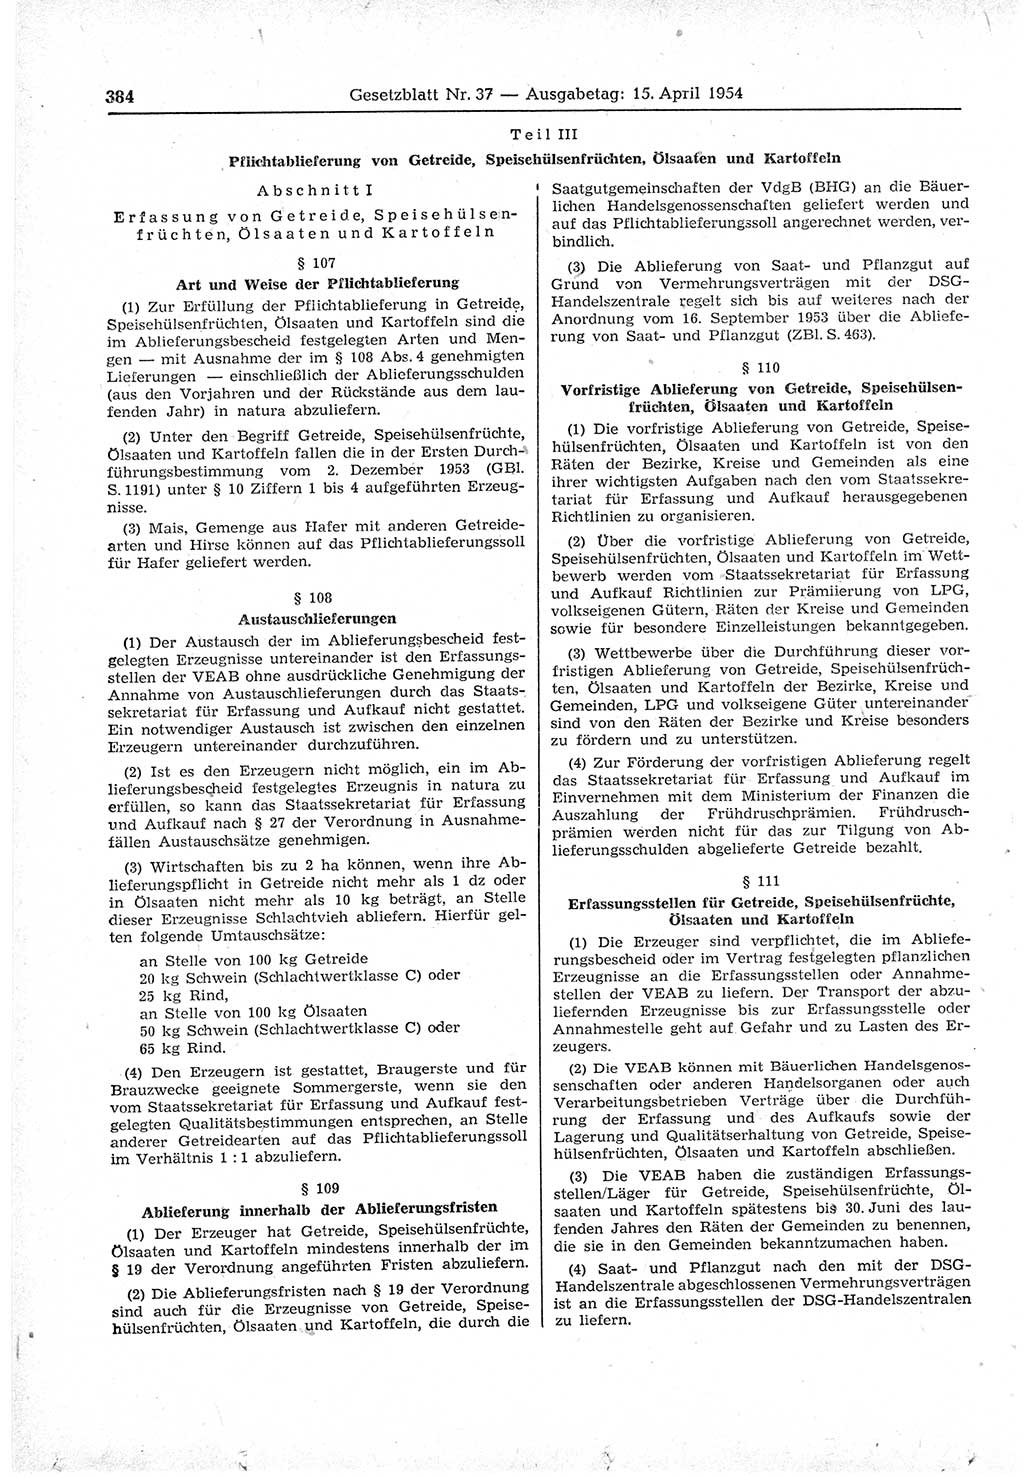 Gesetzblatt (GBl.) der Deutschen Demokratischen Republik (DDR) 1954, Seite 384 (GBl. DDR 1954, S. 384)